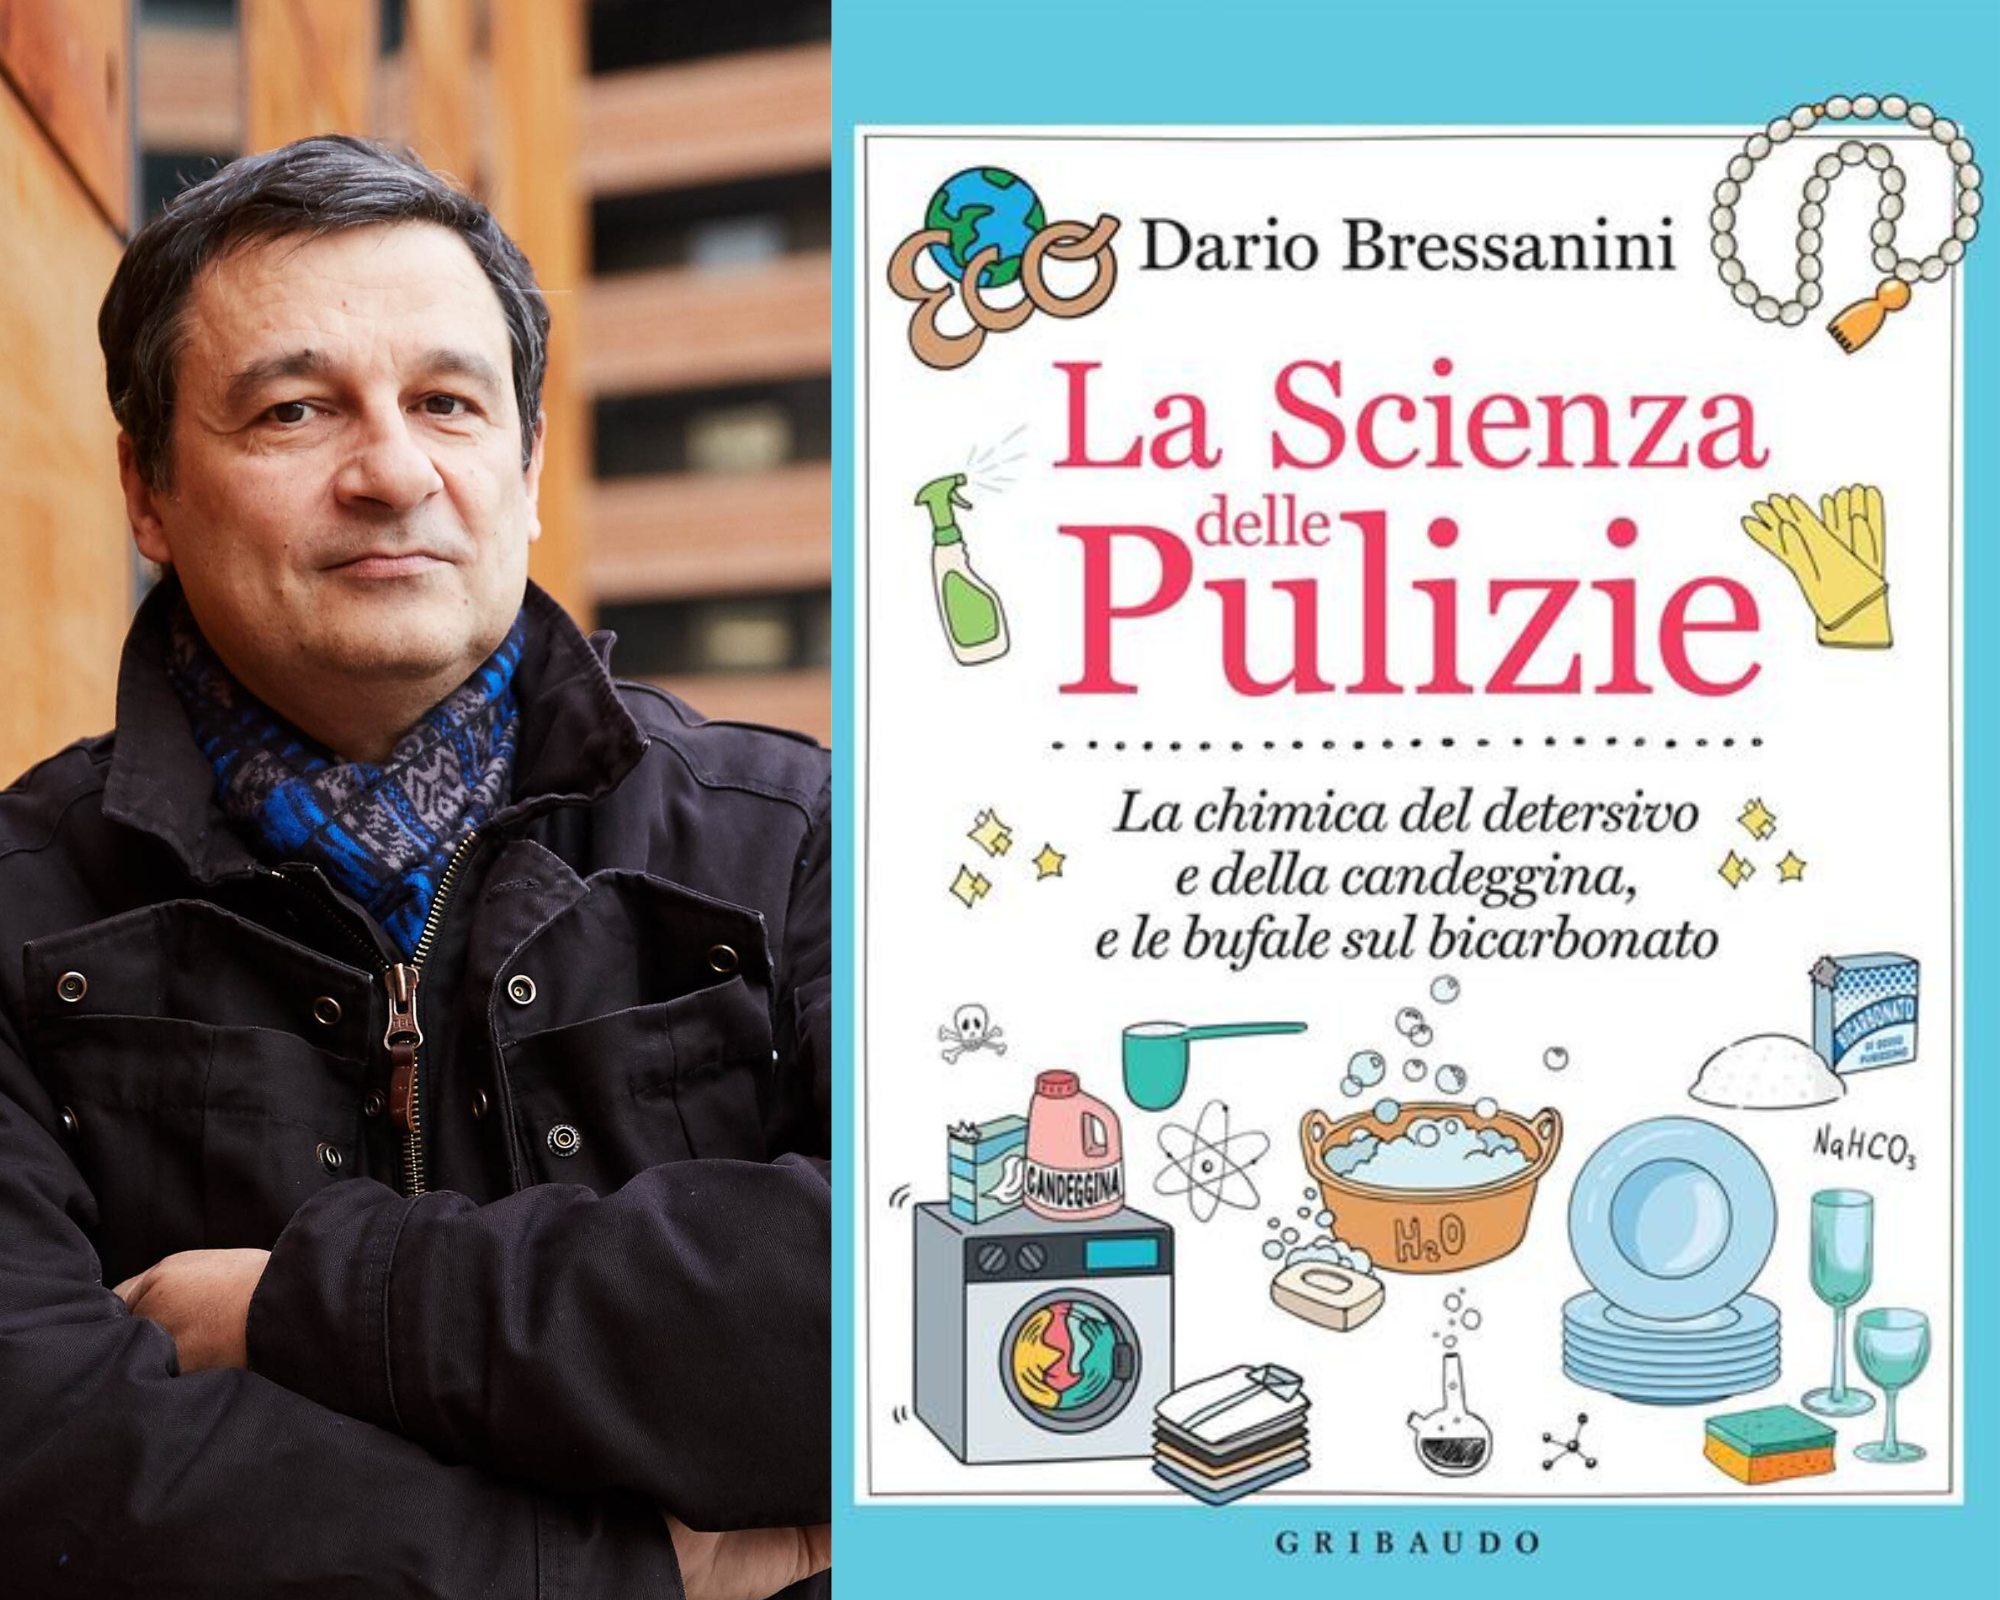 Dario Bressanini presenta il libro La Scienza delle Pulizia, con firmacopie  - Mentelocale Web Magazine